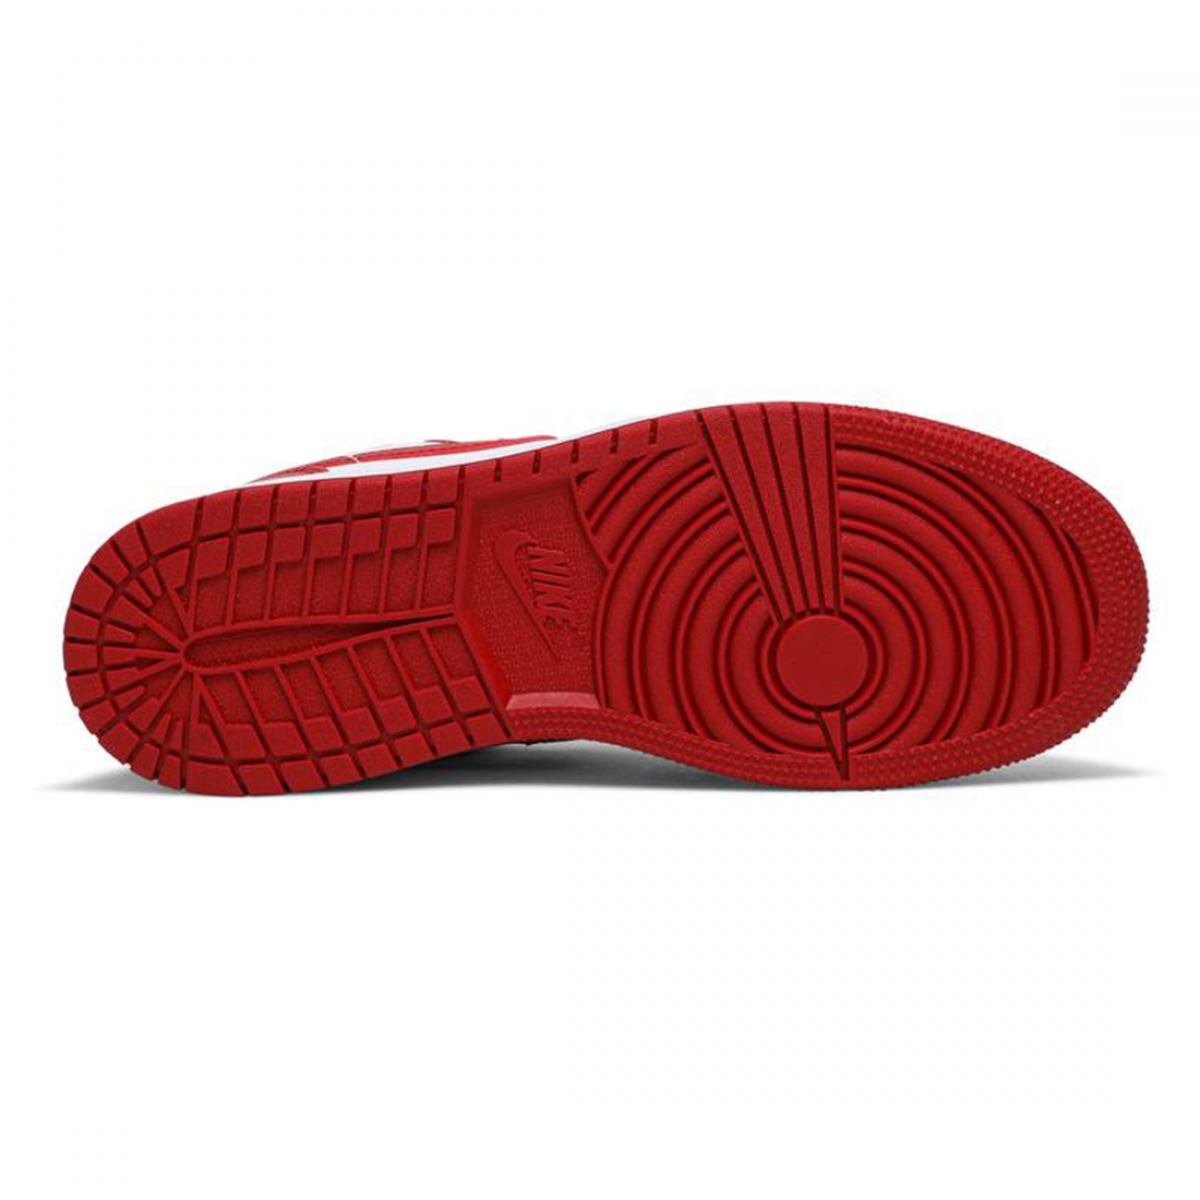 GS Air Jordan 1 Low - 'Black/Gym Red' – Kicks Lounge